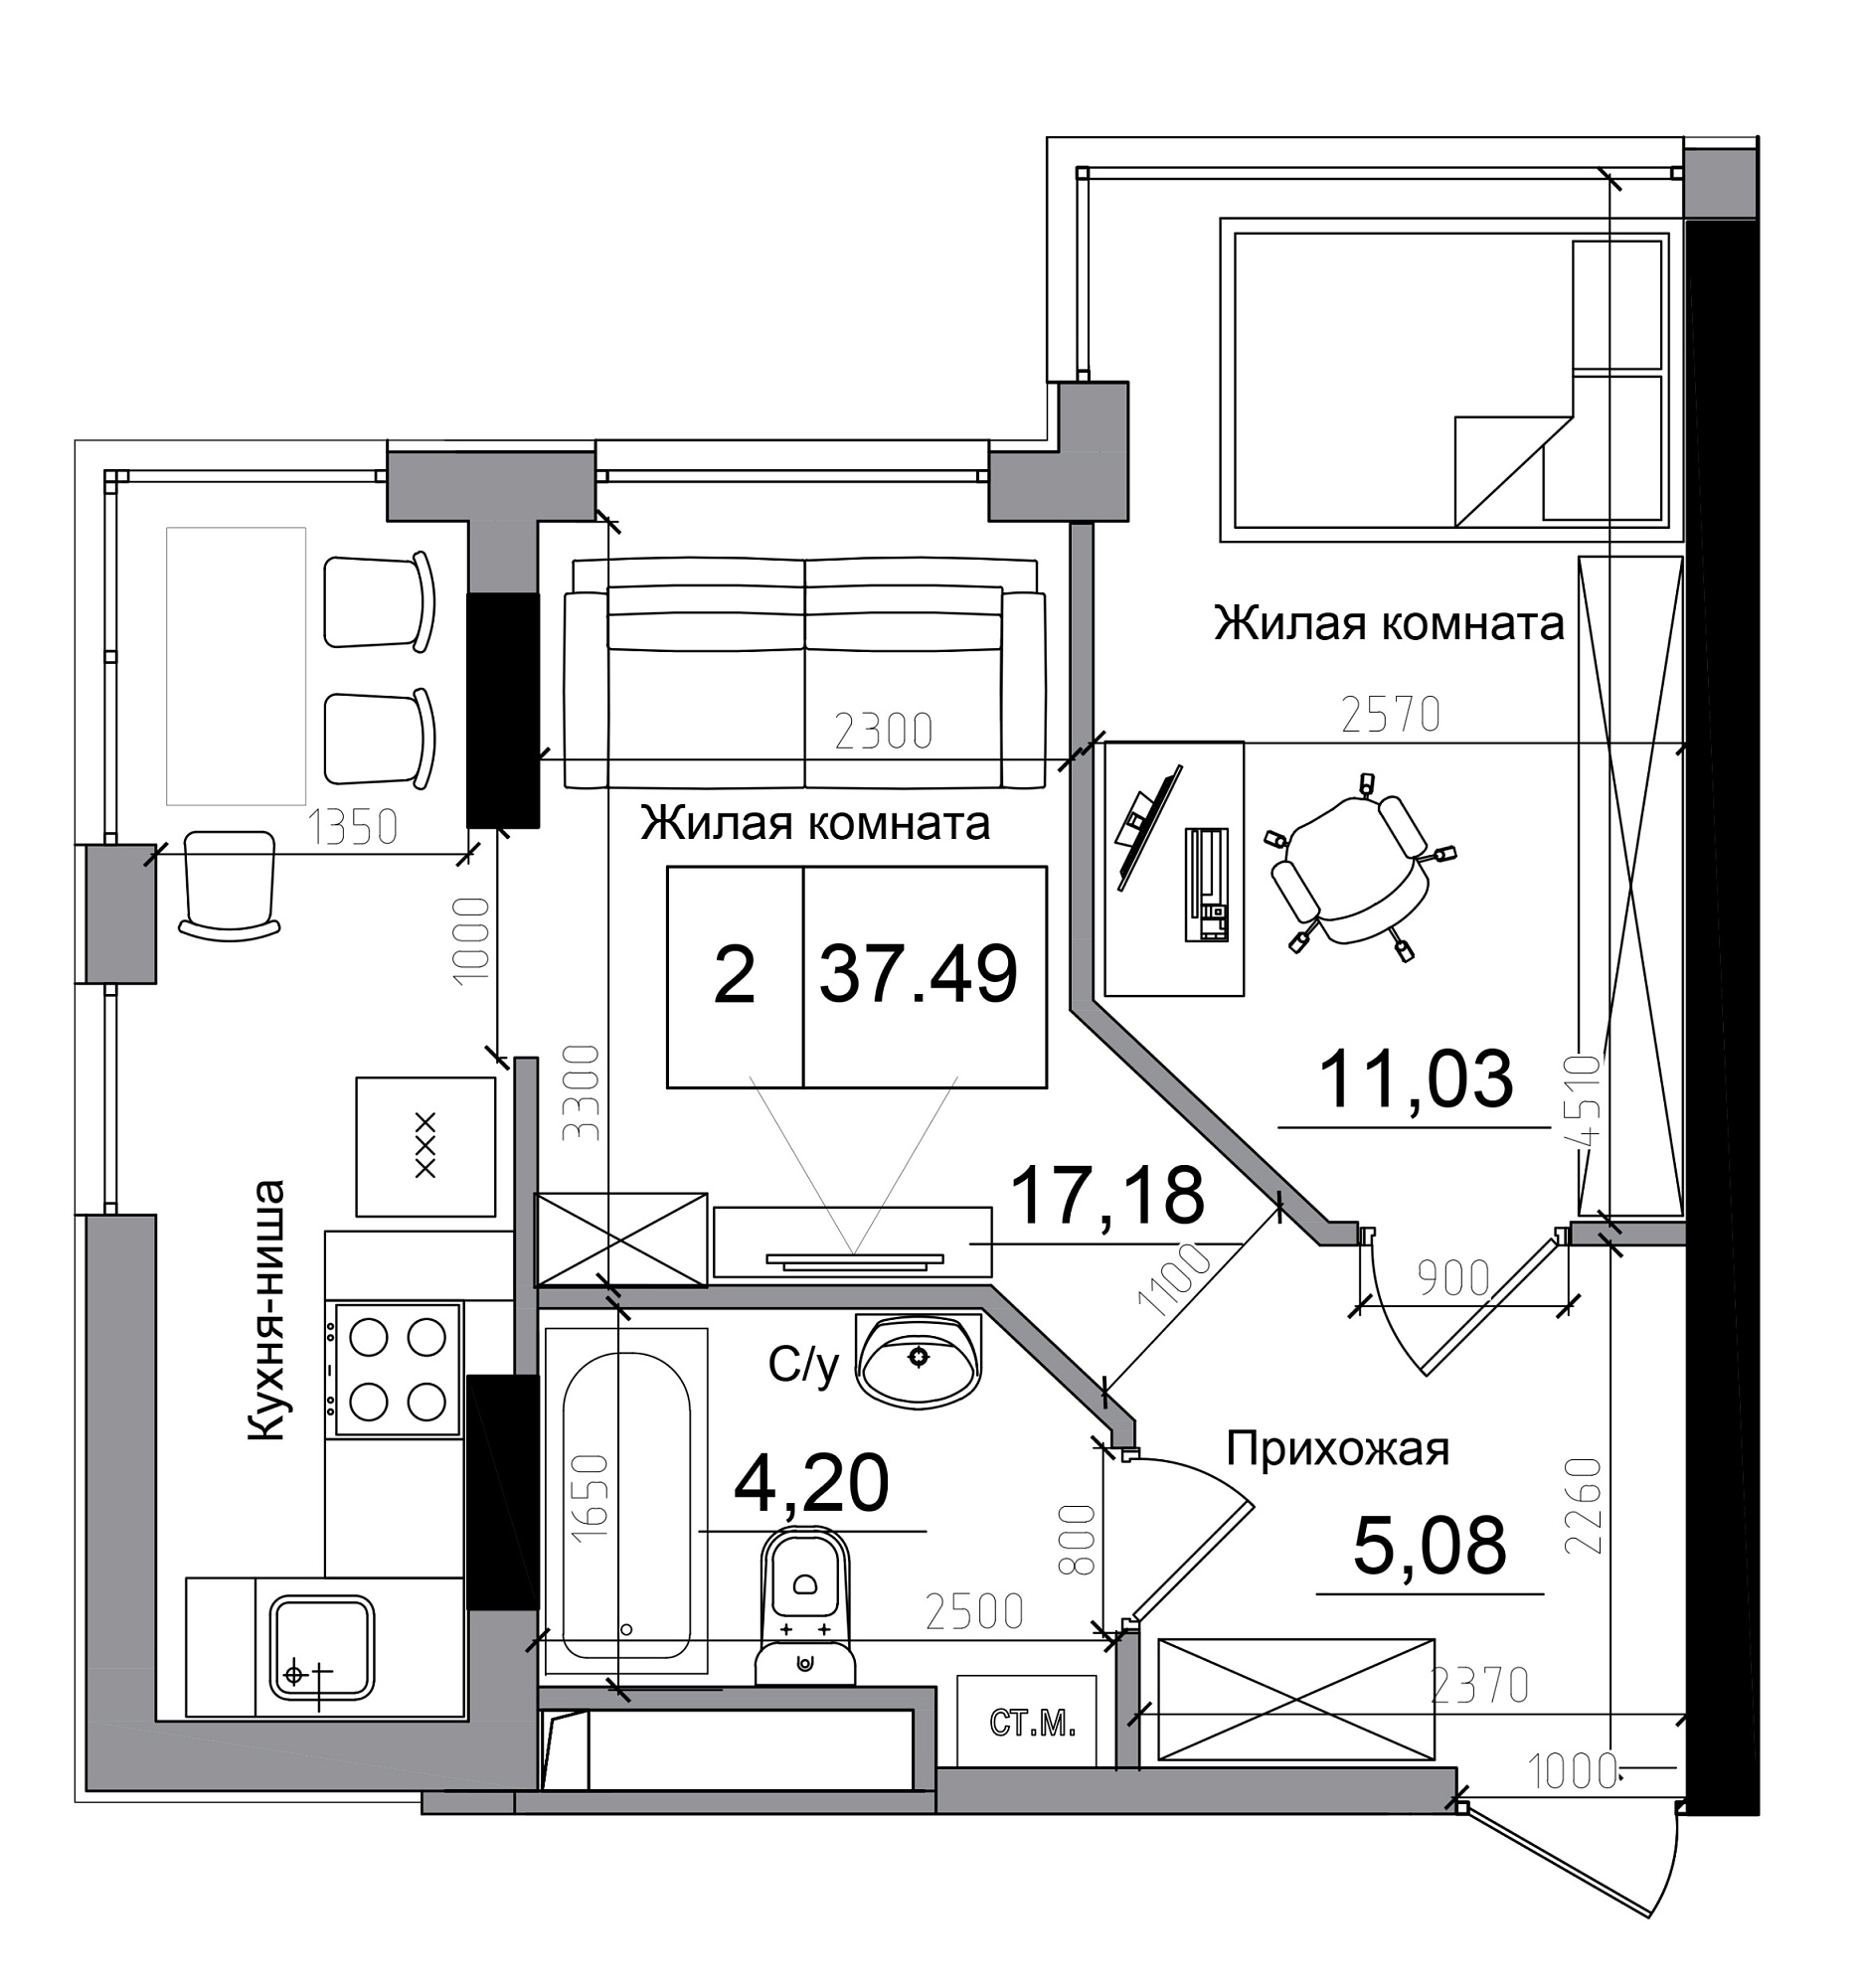 Планировка 1-к квартира площей 37.49м2, AB-11-12/00005.